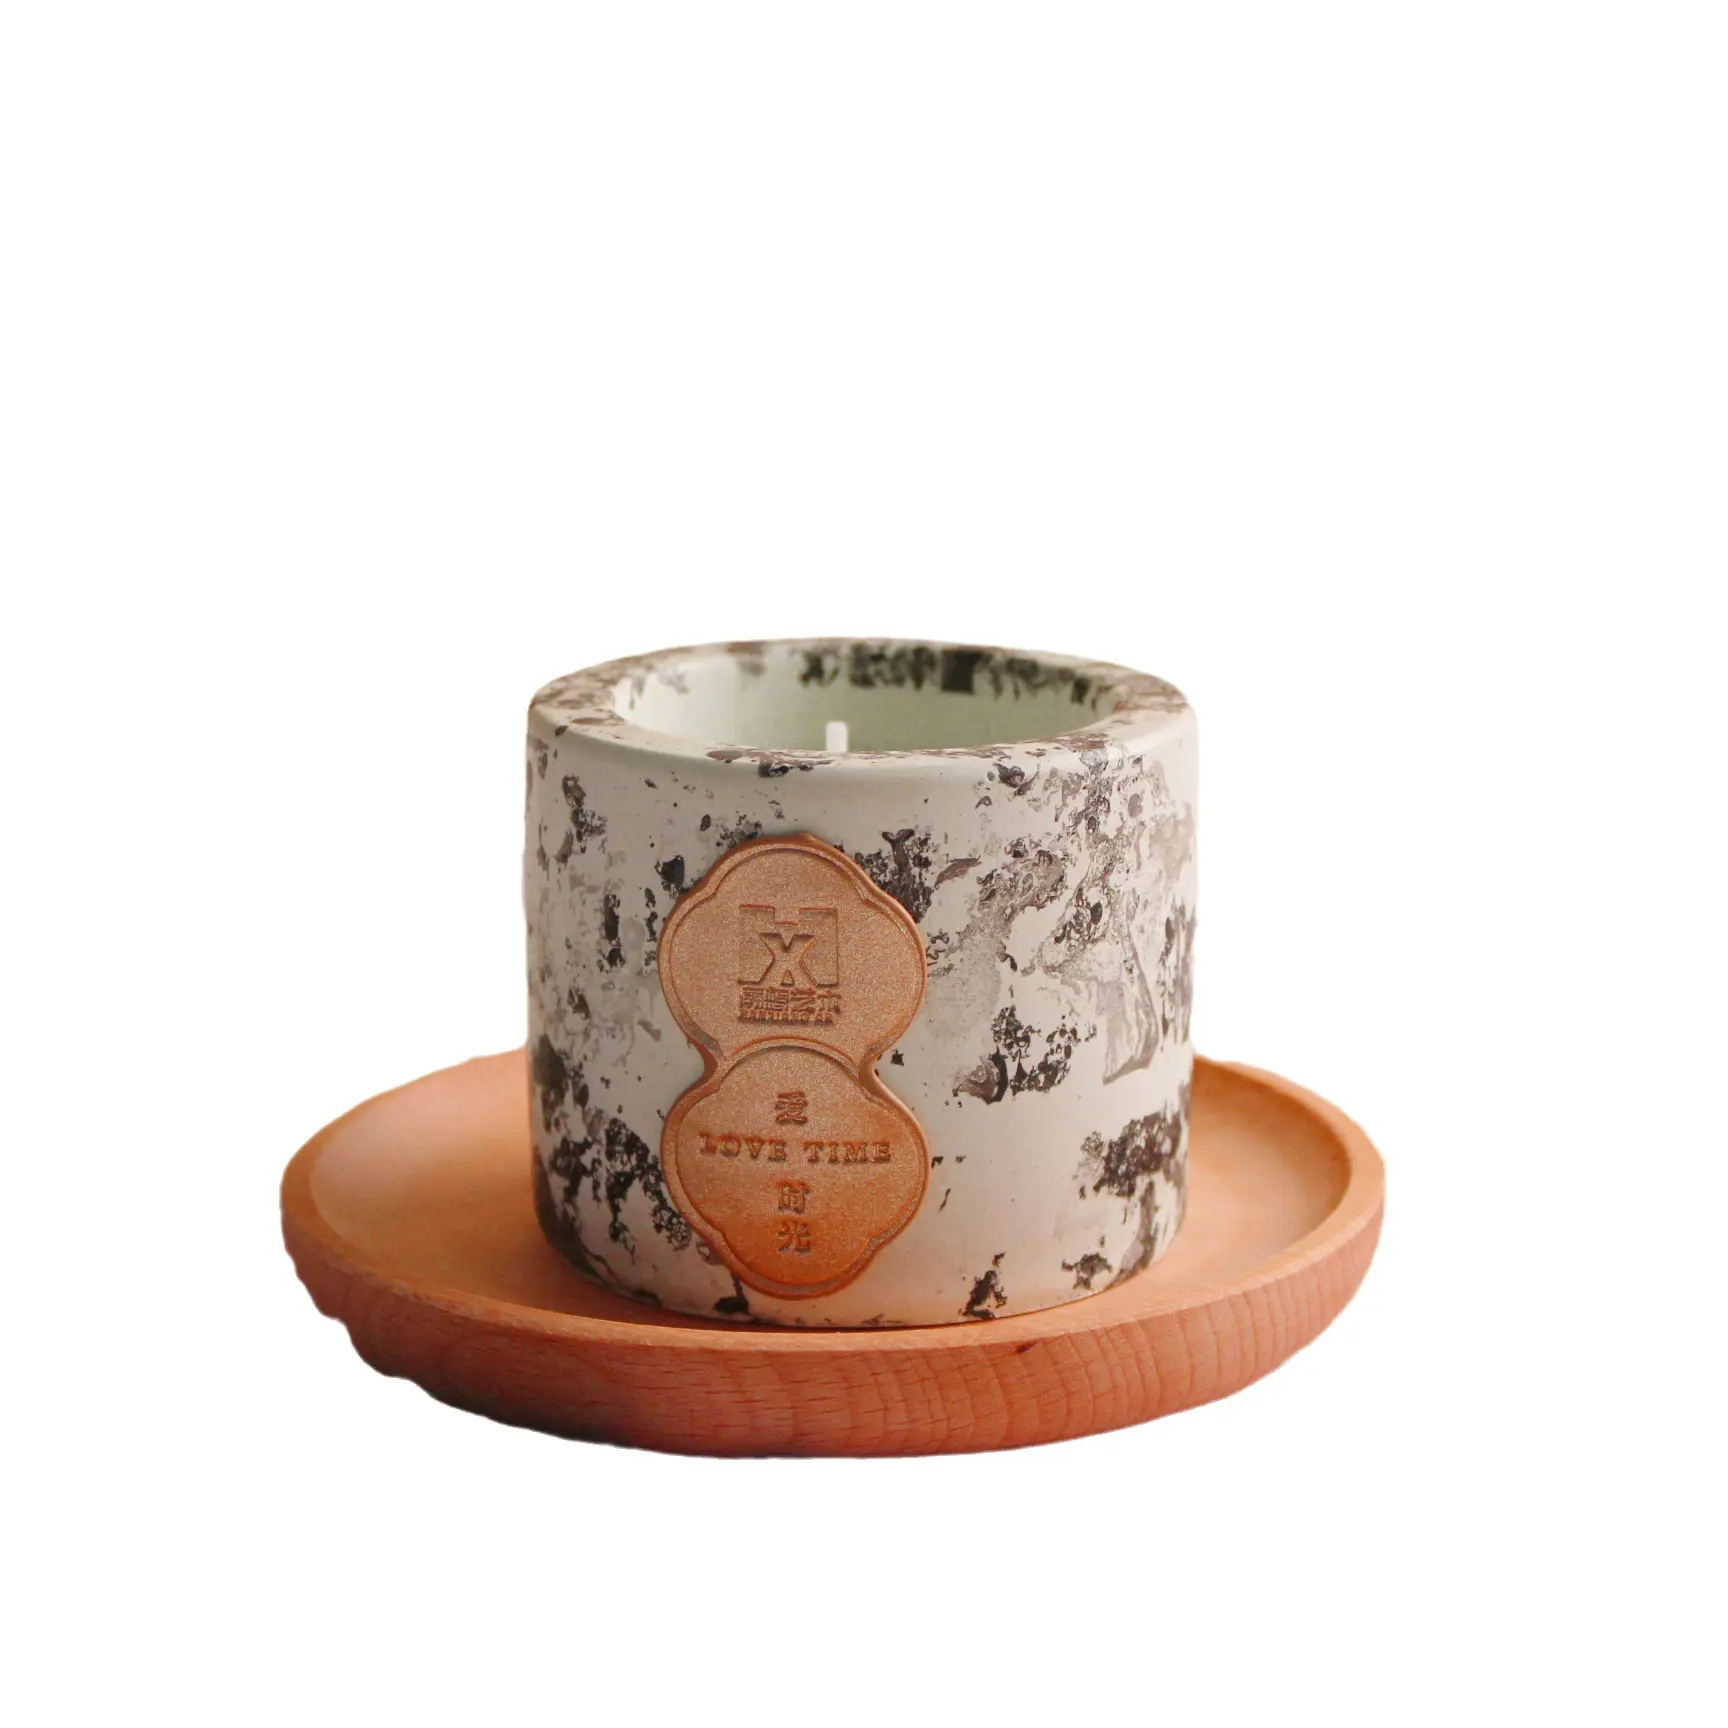 Einzigartige kleine duftkerzen 24 Stunden lang Räucherstoff organische Säule flacher Boden duftende Teelichter-Kerzen Luxus-Keramik-Neuheitskerzen